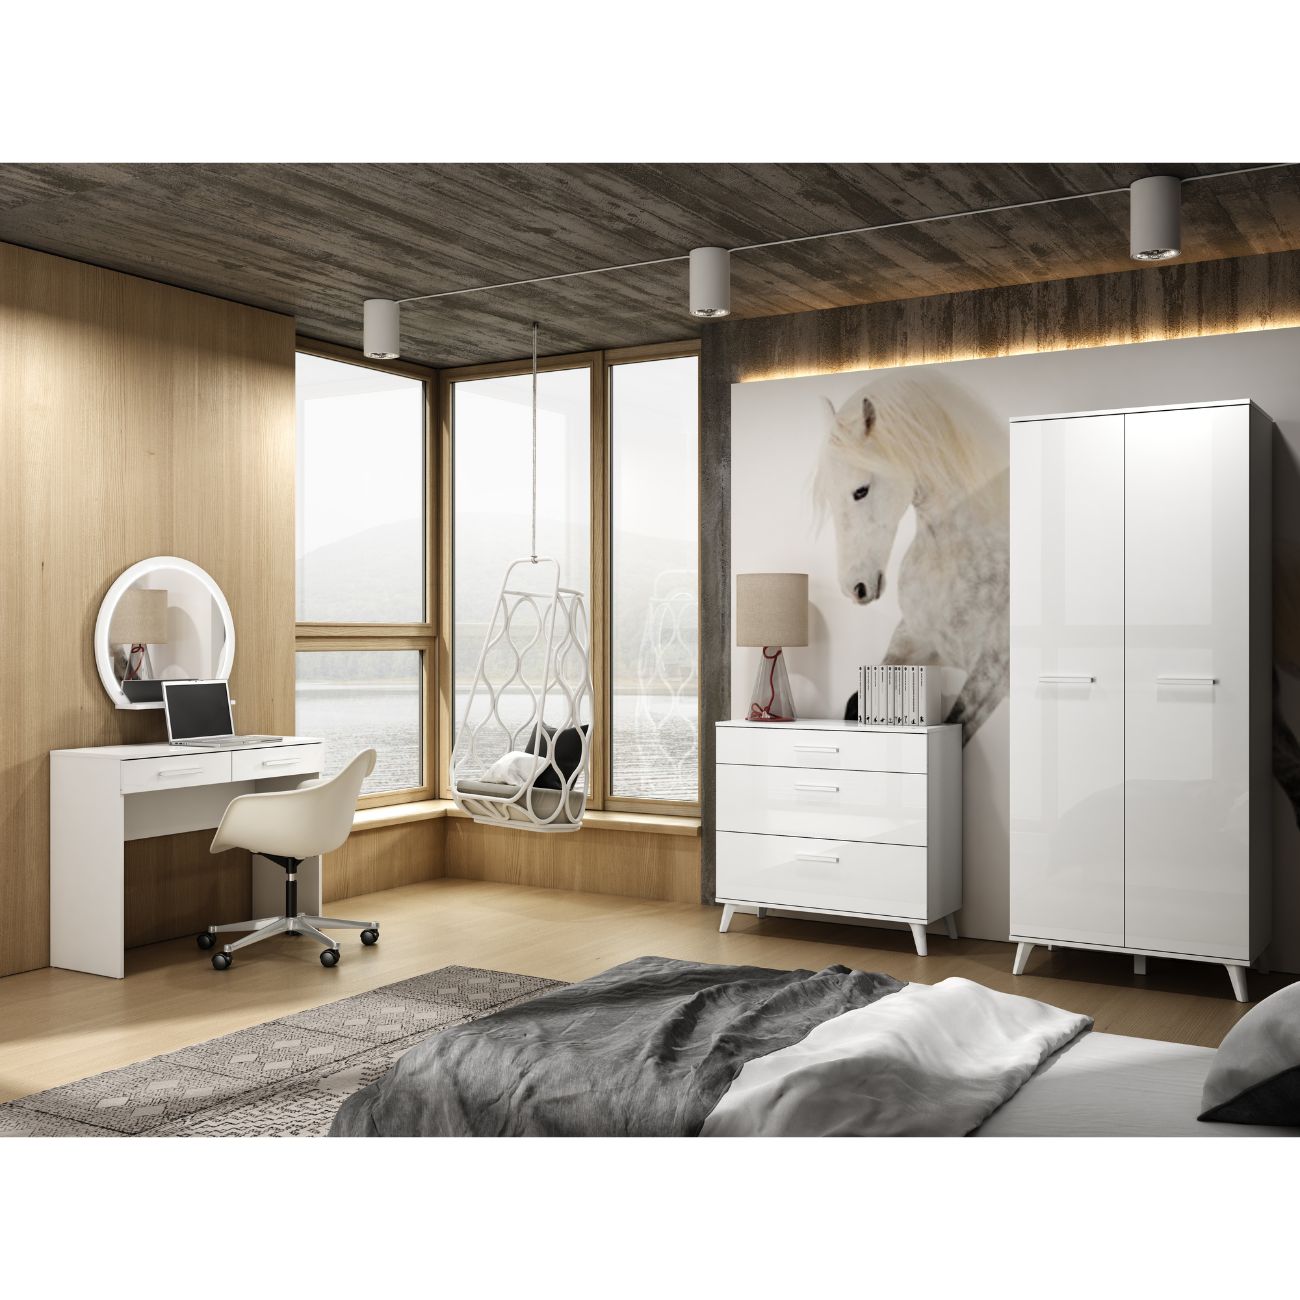 Zdjęcie przedstawiające przykładową aranżację sypialni z szafą na ubrania oraz komodą z szufladami Seko